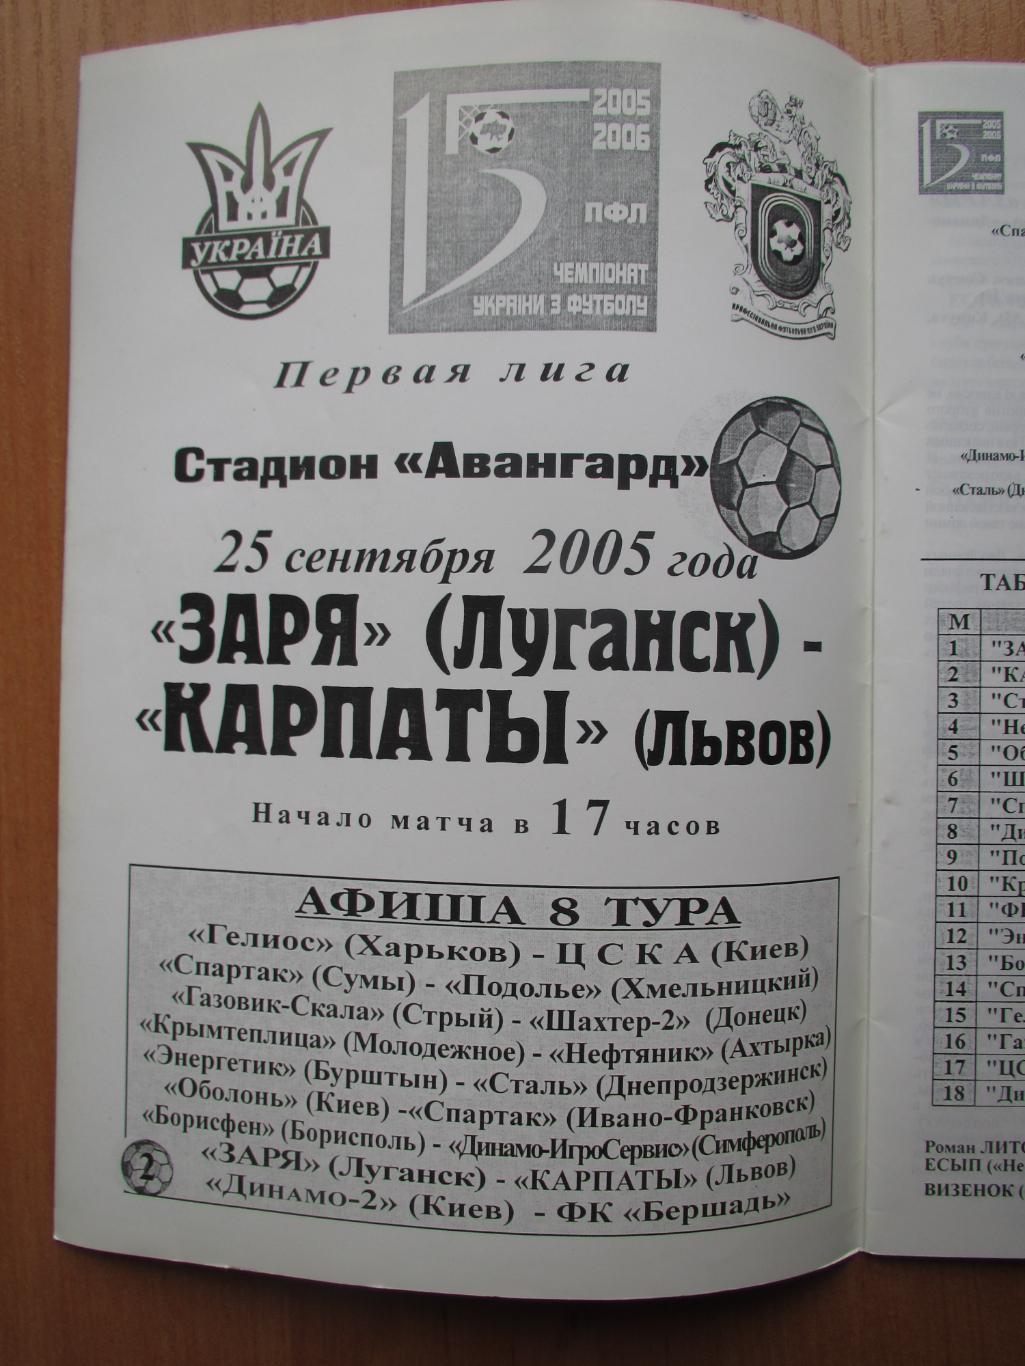 Заря Луганск-Карпаты Львов 25.09.2005 1